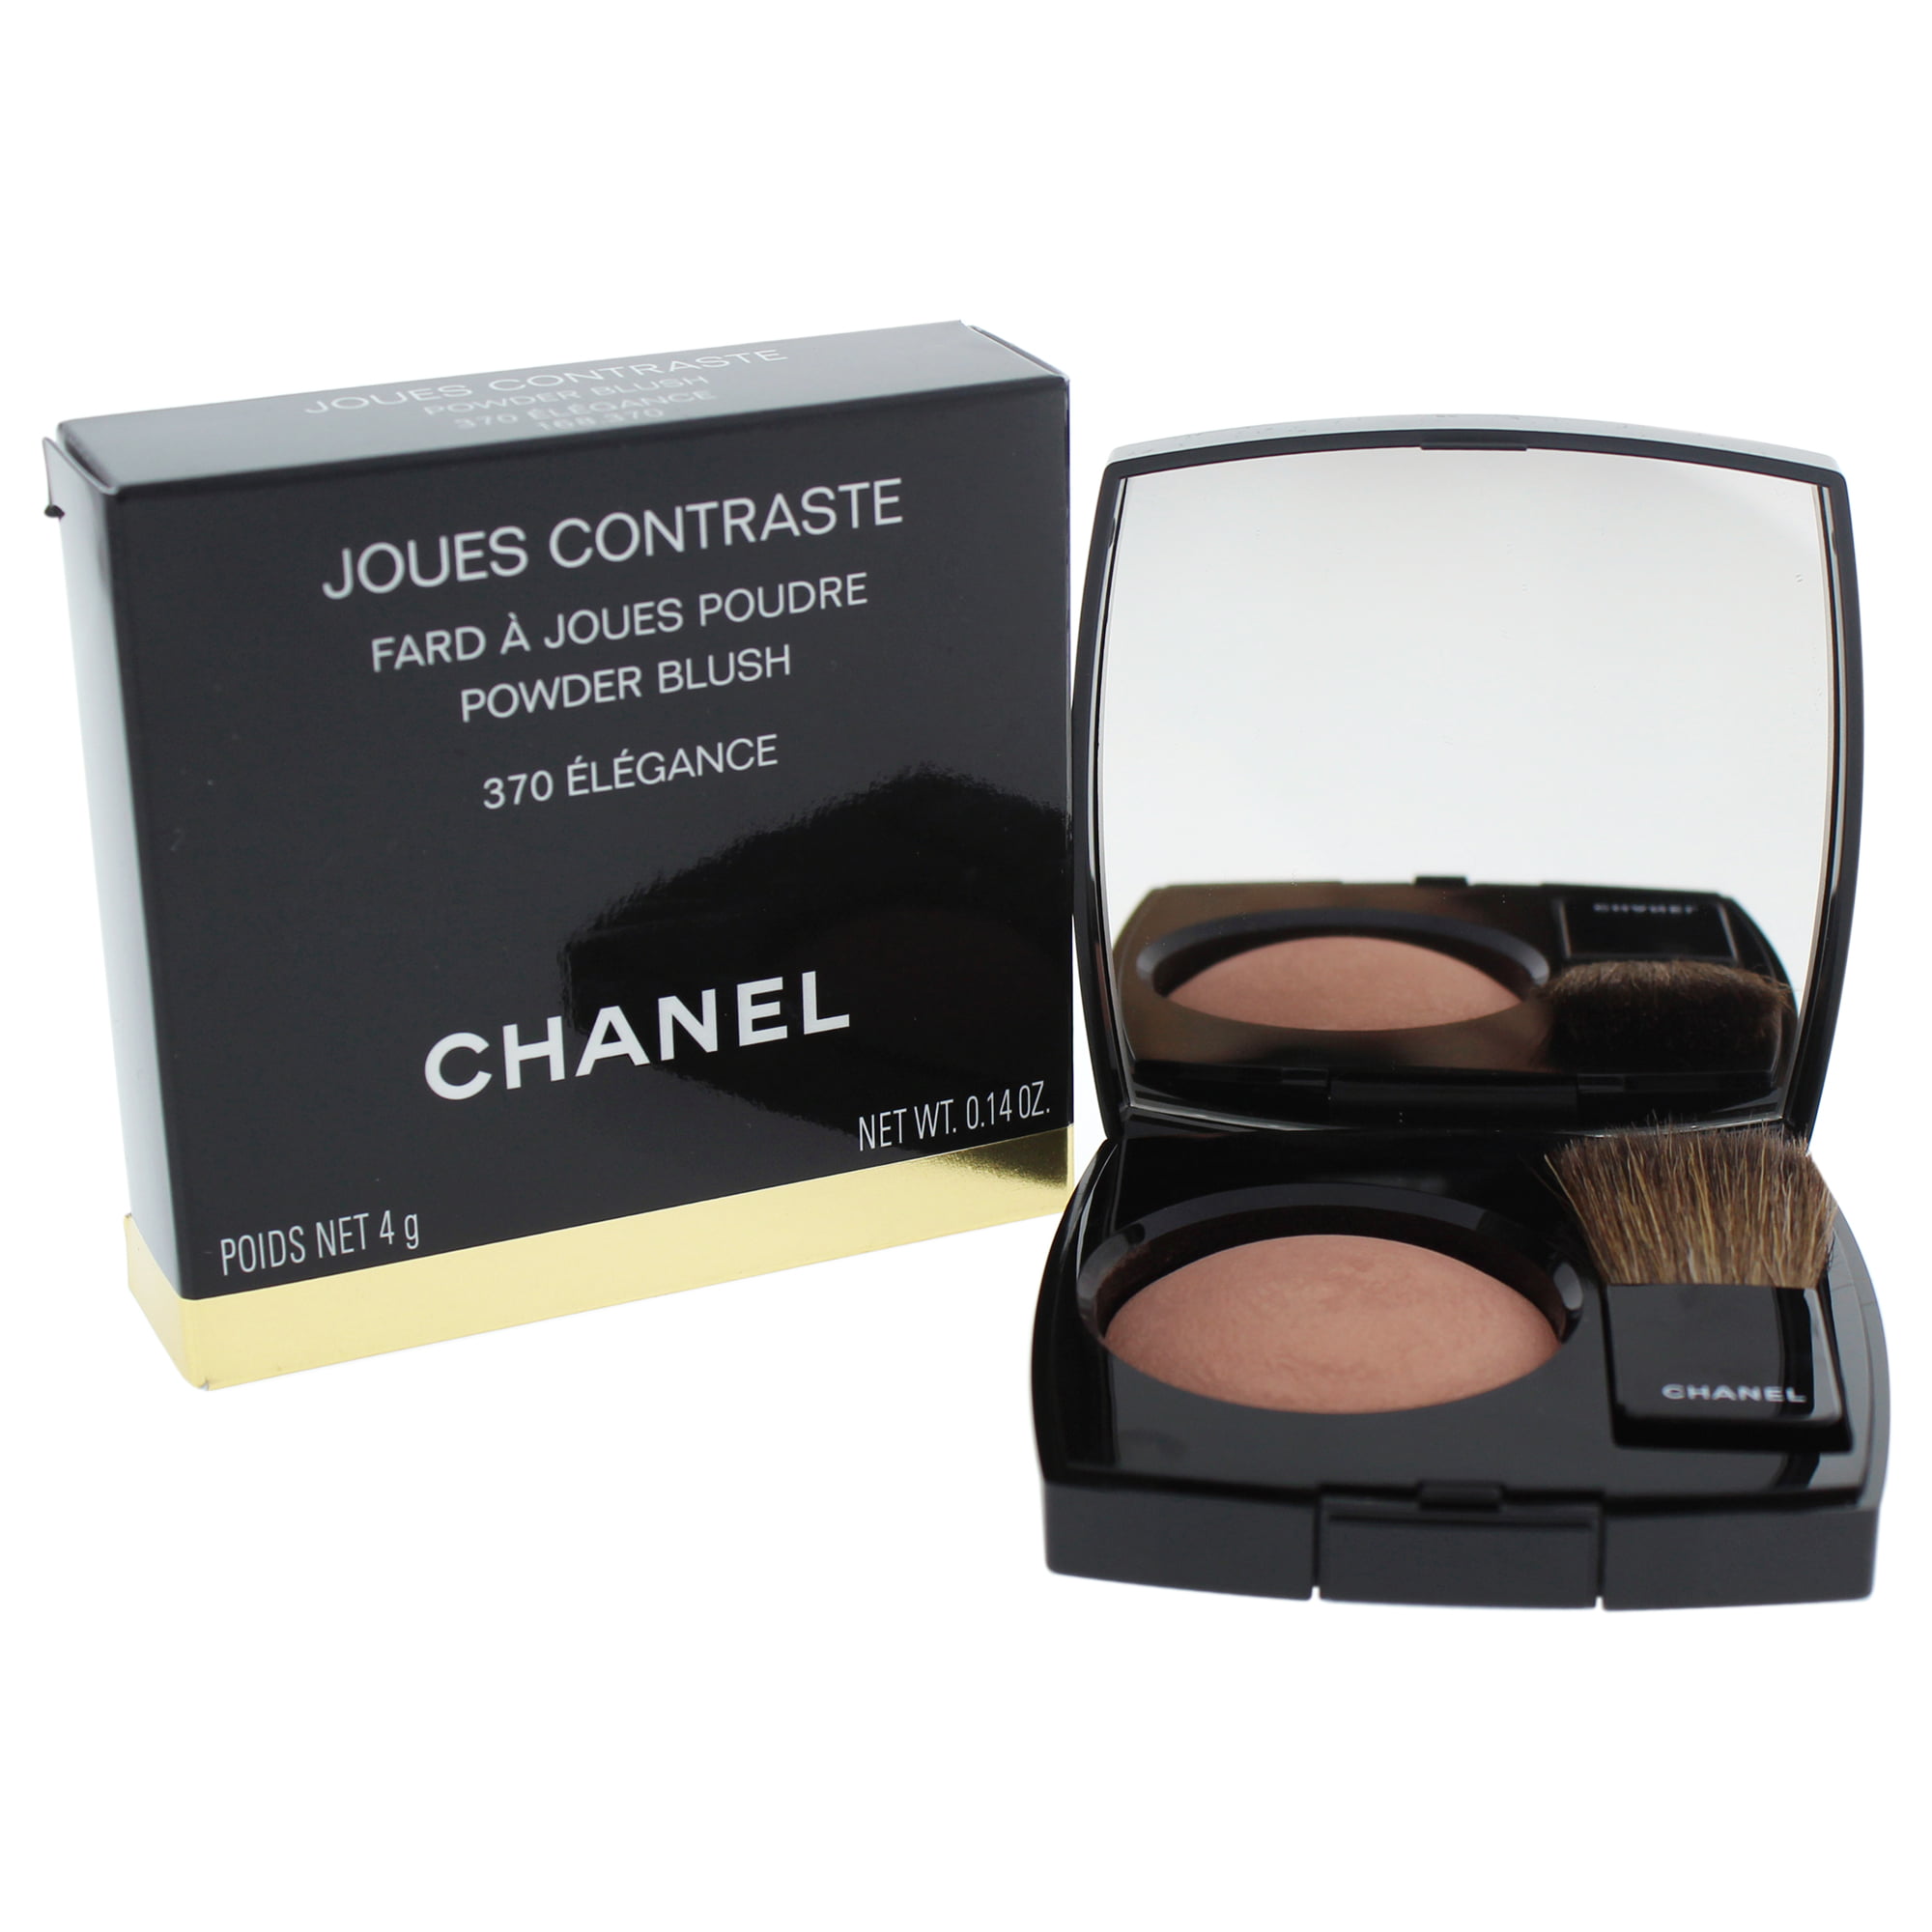 Joues Contraste Powder Blush - # 370 Elegance by Chanel for Women - 0.14 oz  Blush